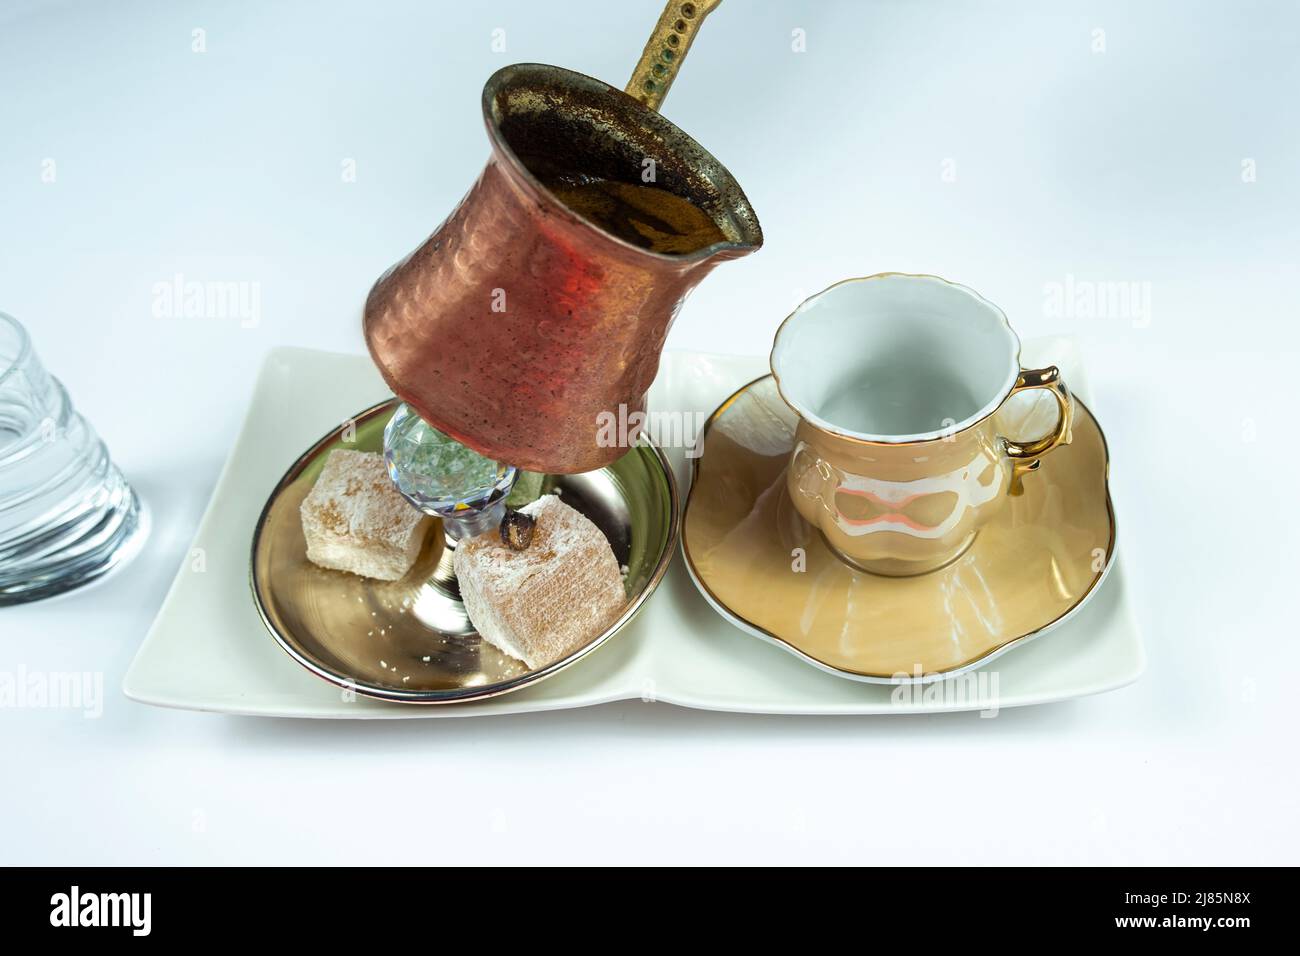 Le café turc de la casserole traditionnelle, isolé sur fond blanc, service de café turc avec délice et eau, service de concep Banque D'Images